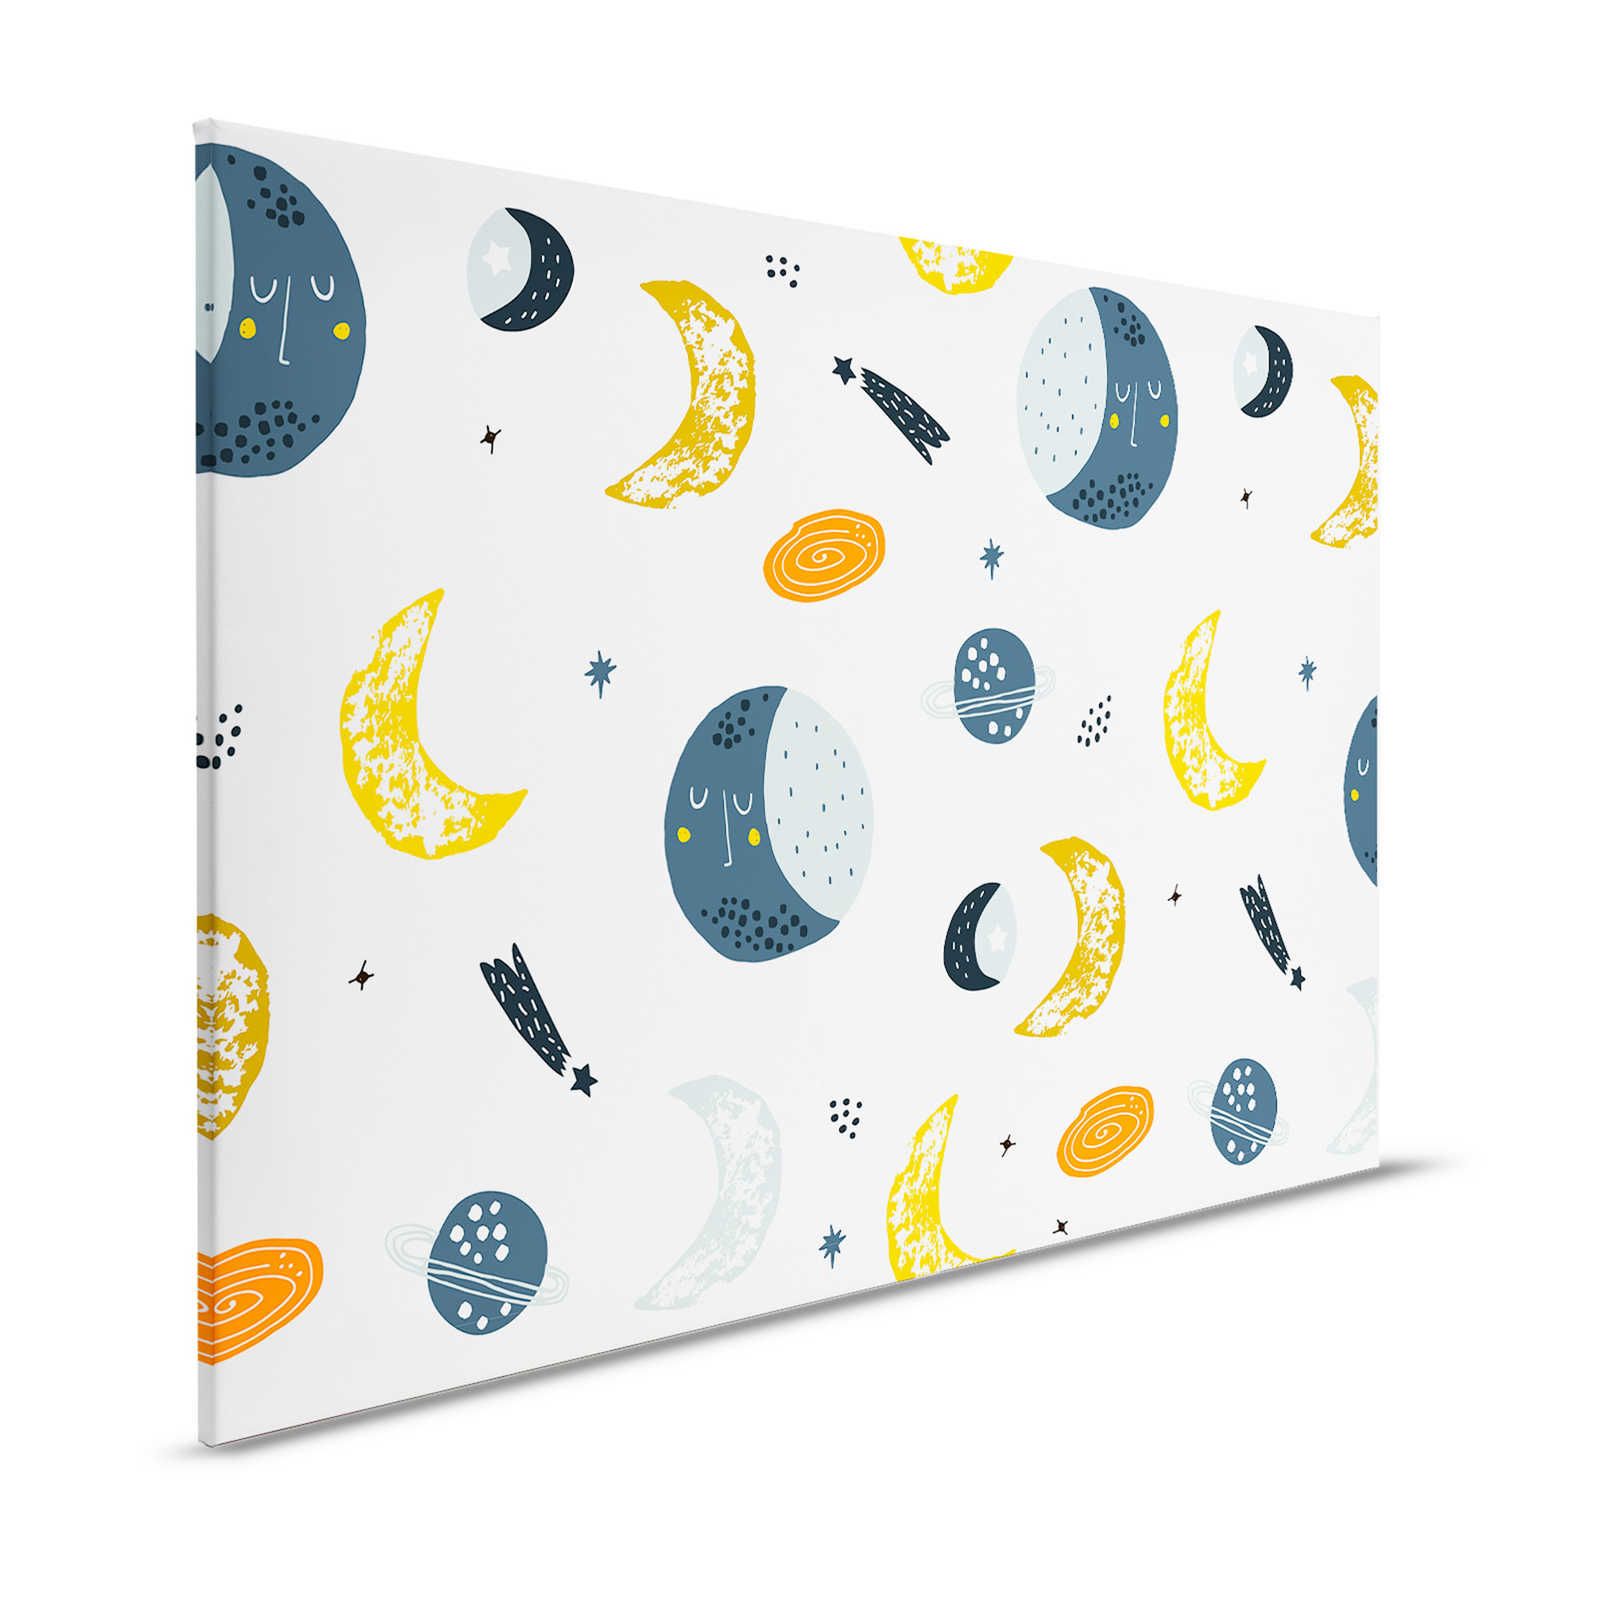 Lienzo con lunas y estrellas fugaces - 120 cm x 80 cm
